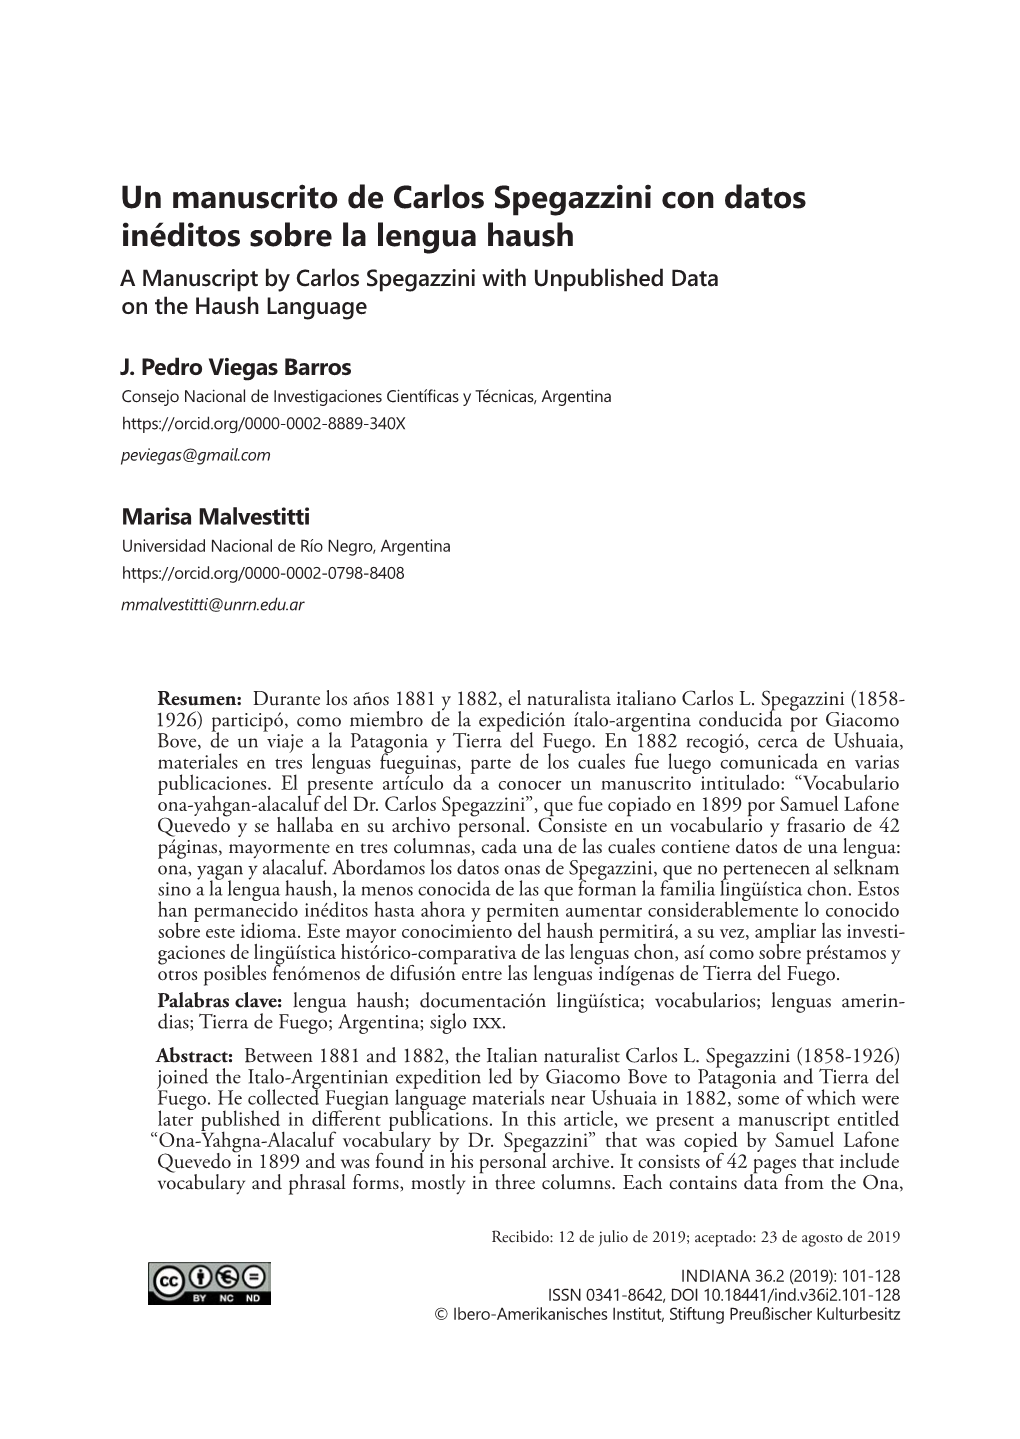 Un Manuscrito De Carlos Spegazzini Con Datos Inéditos Sobre La Lengua Haush a Manuscript by Carlos Spegazzini with Unpublished Data on the Haush Language